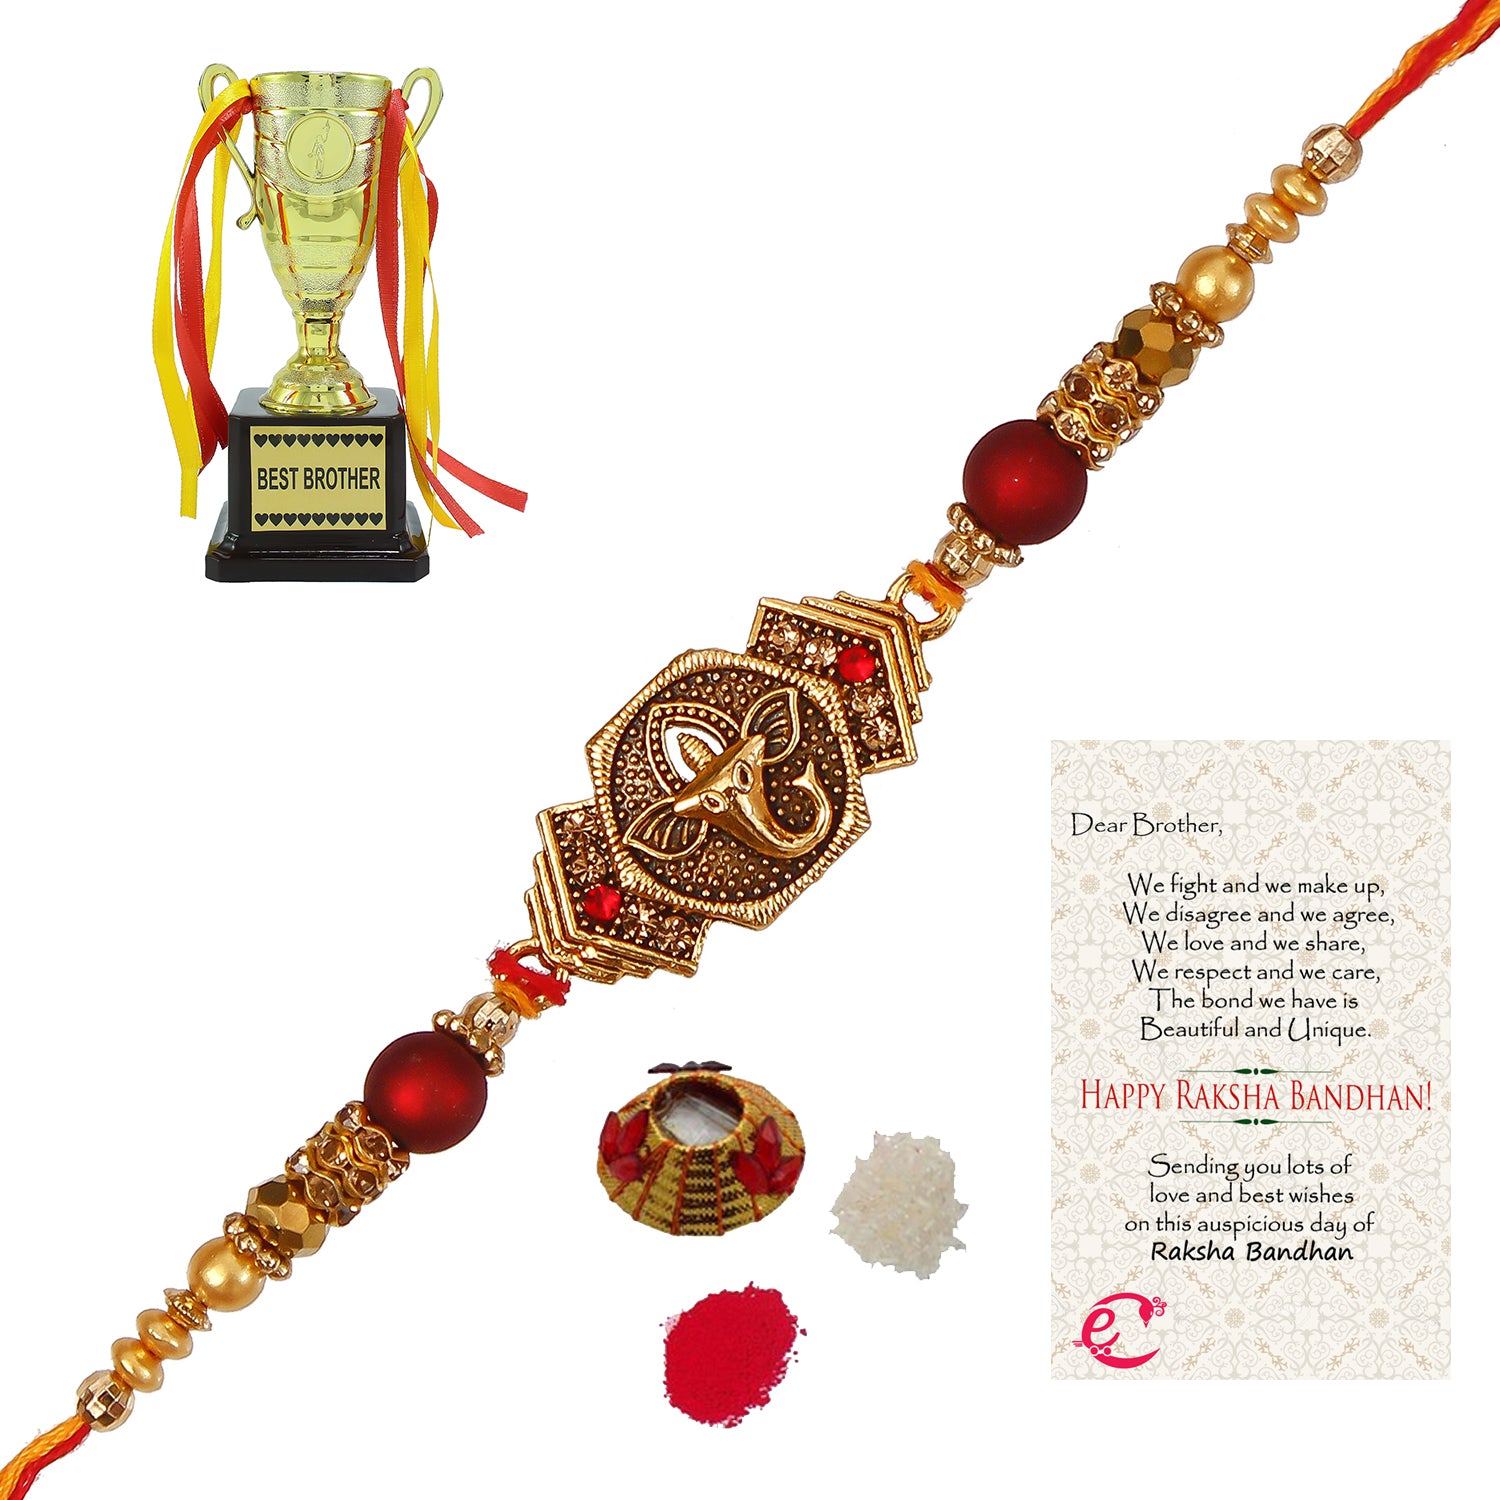 Designer Religious Ganesha Rakhi with Best Brother Trophy and Roli Tikka Matki, Best Wishes Greeting Card